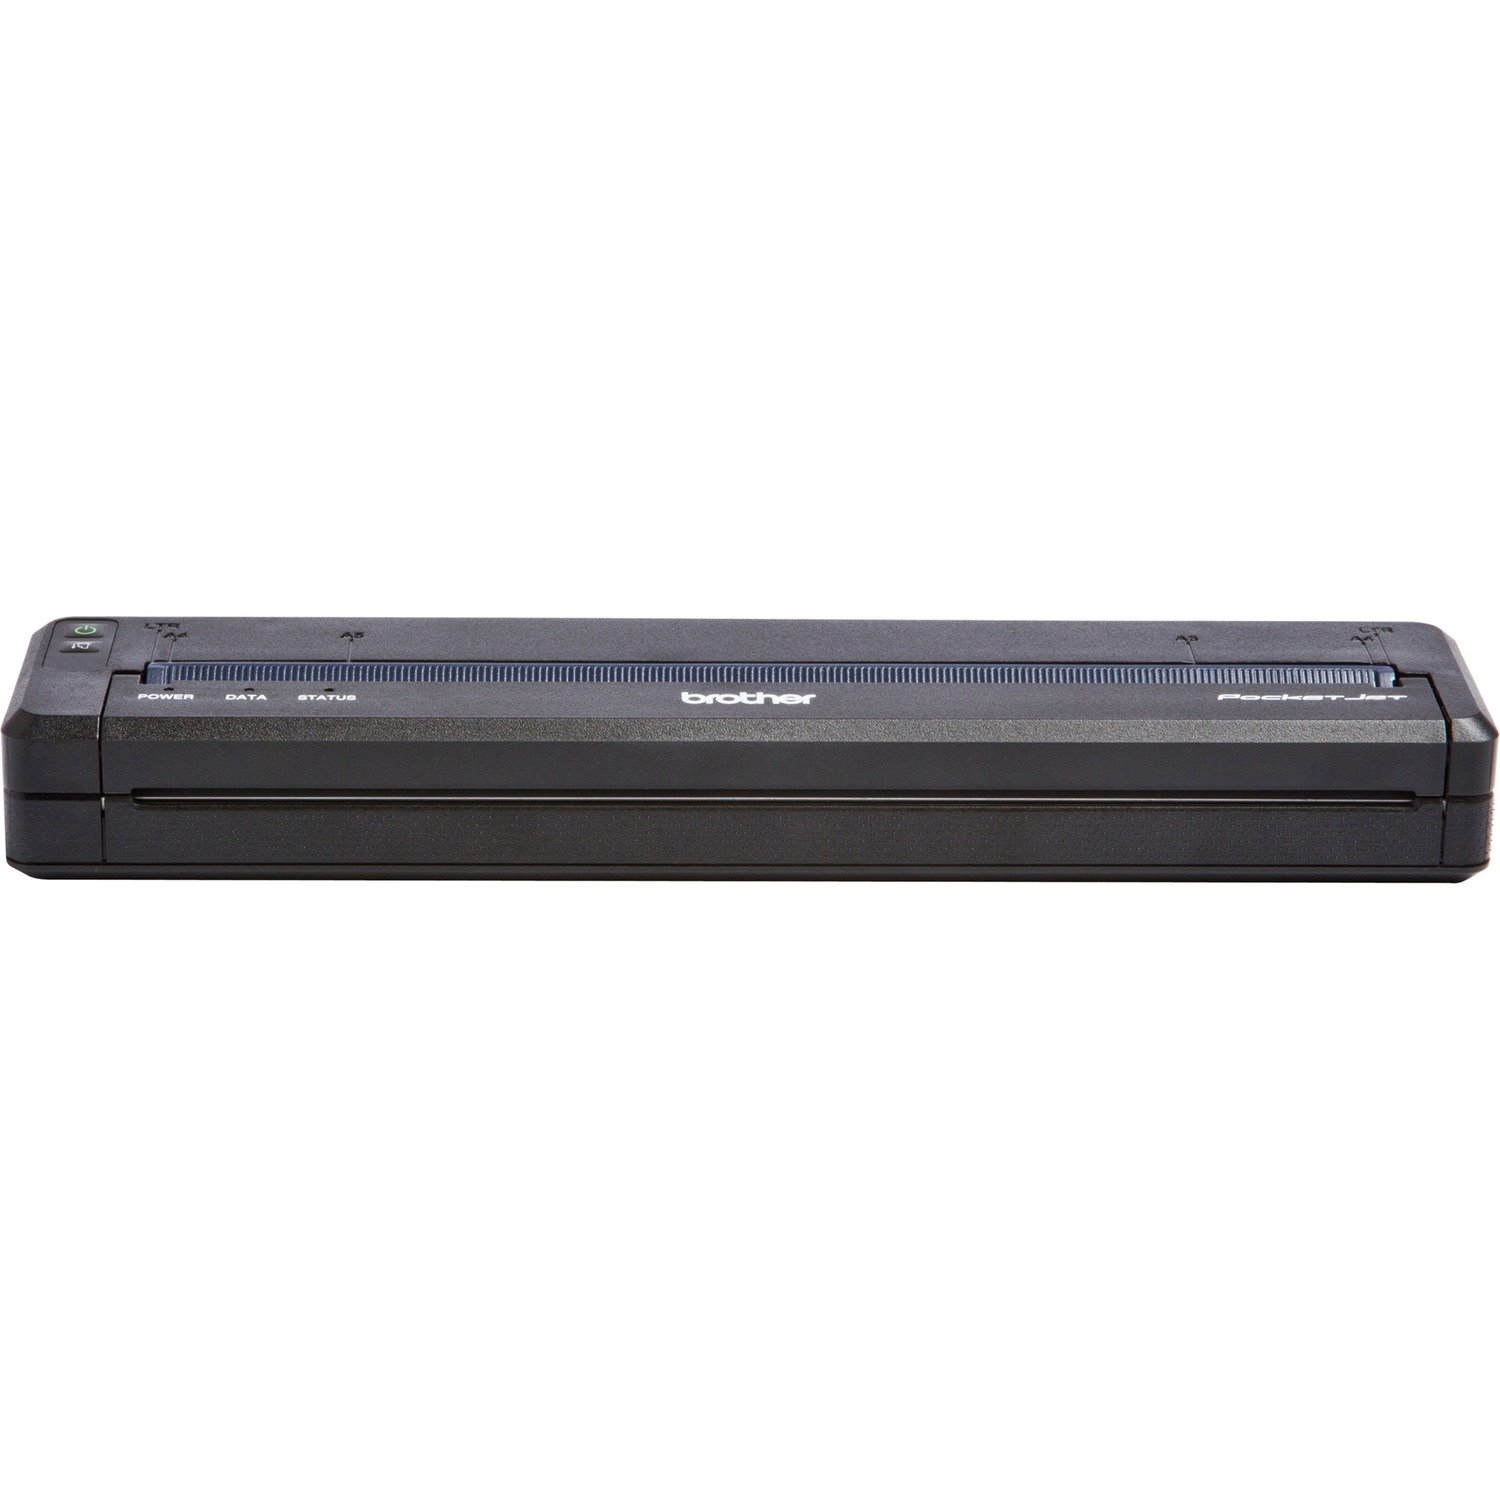 Brother PocketJet PJ723 Direct Thermal Printer - Monochrome - Portable - Plain Paper Print - USB